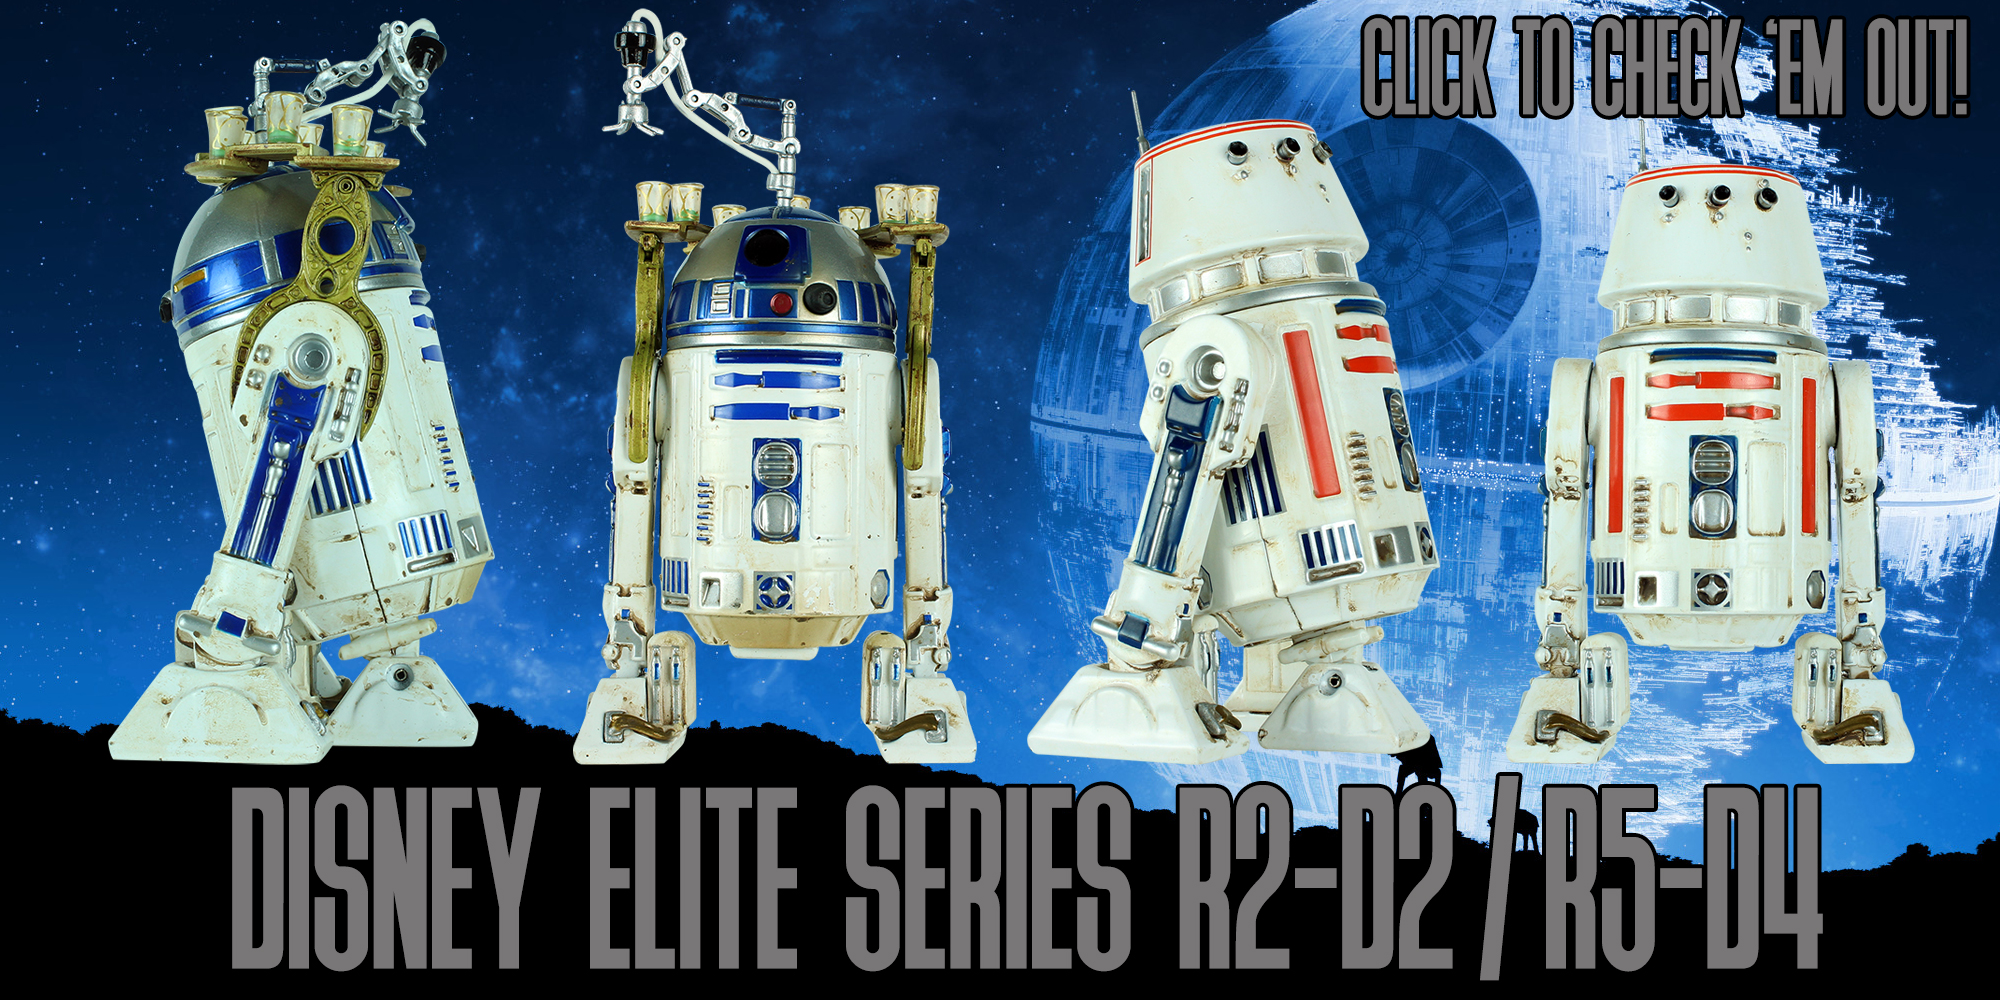 Star Wars Elite Series